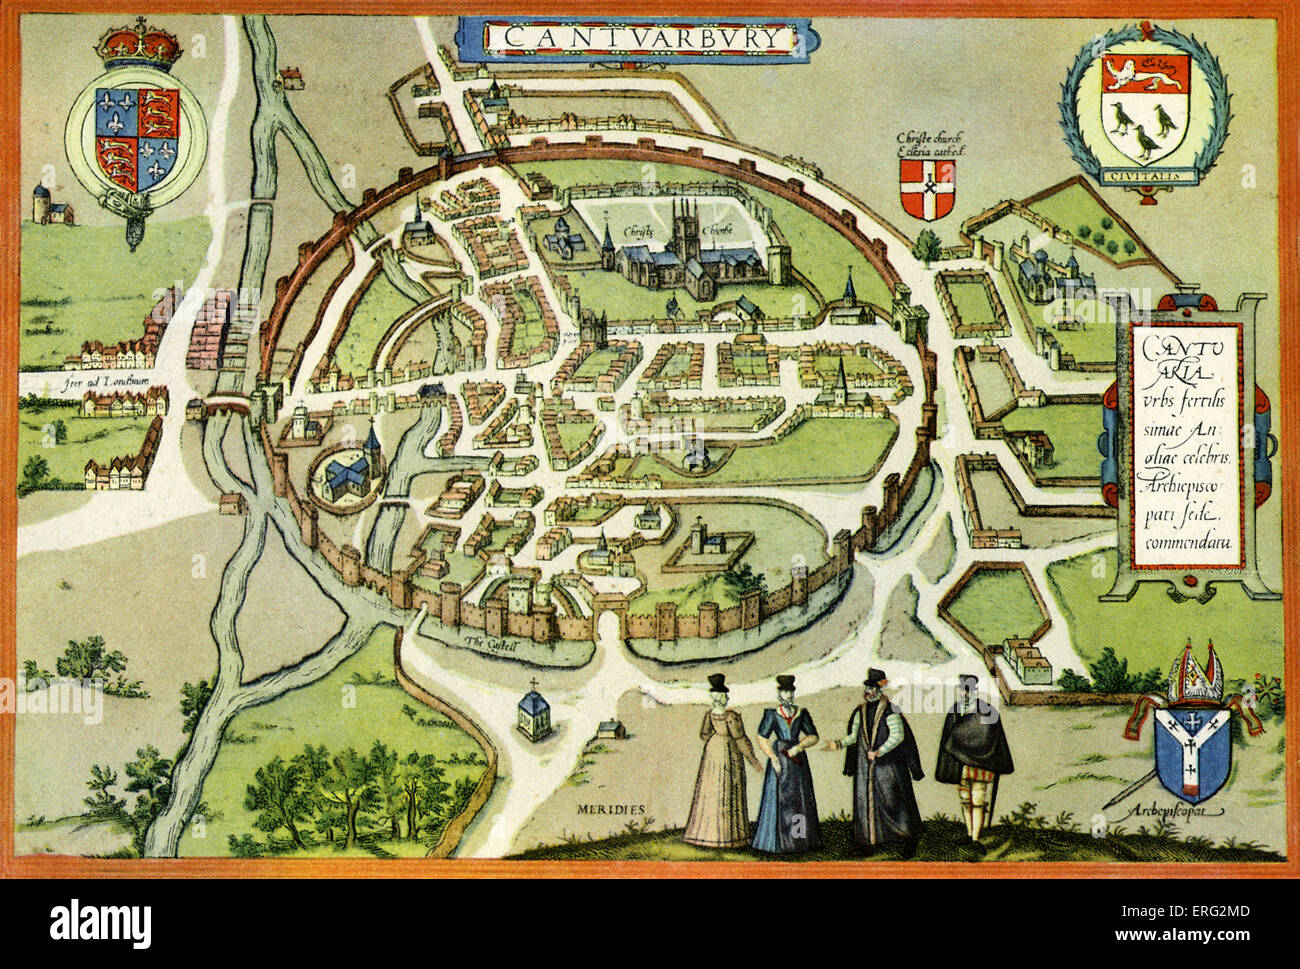 Planifier de Canterbury au 16ème siècle, datée vers 1580. Publié par Braun et Hogenburg. Banque D'Images